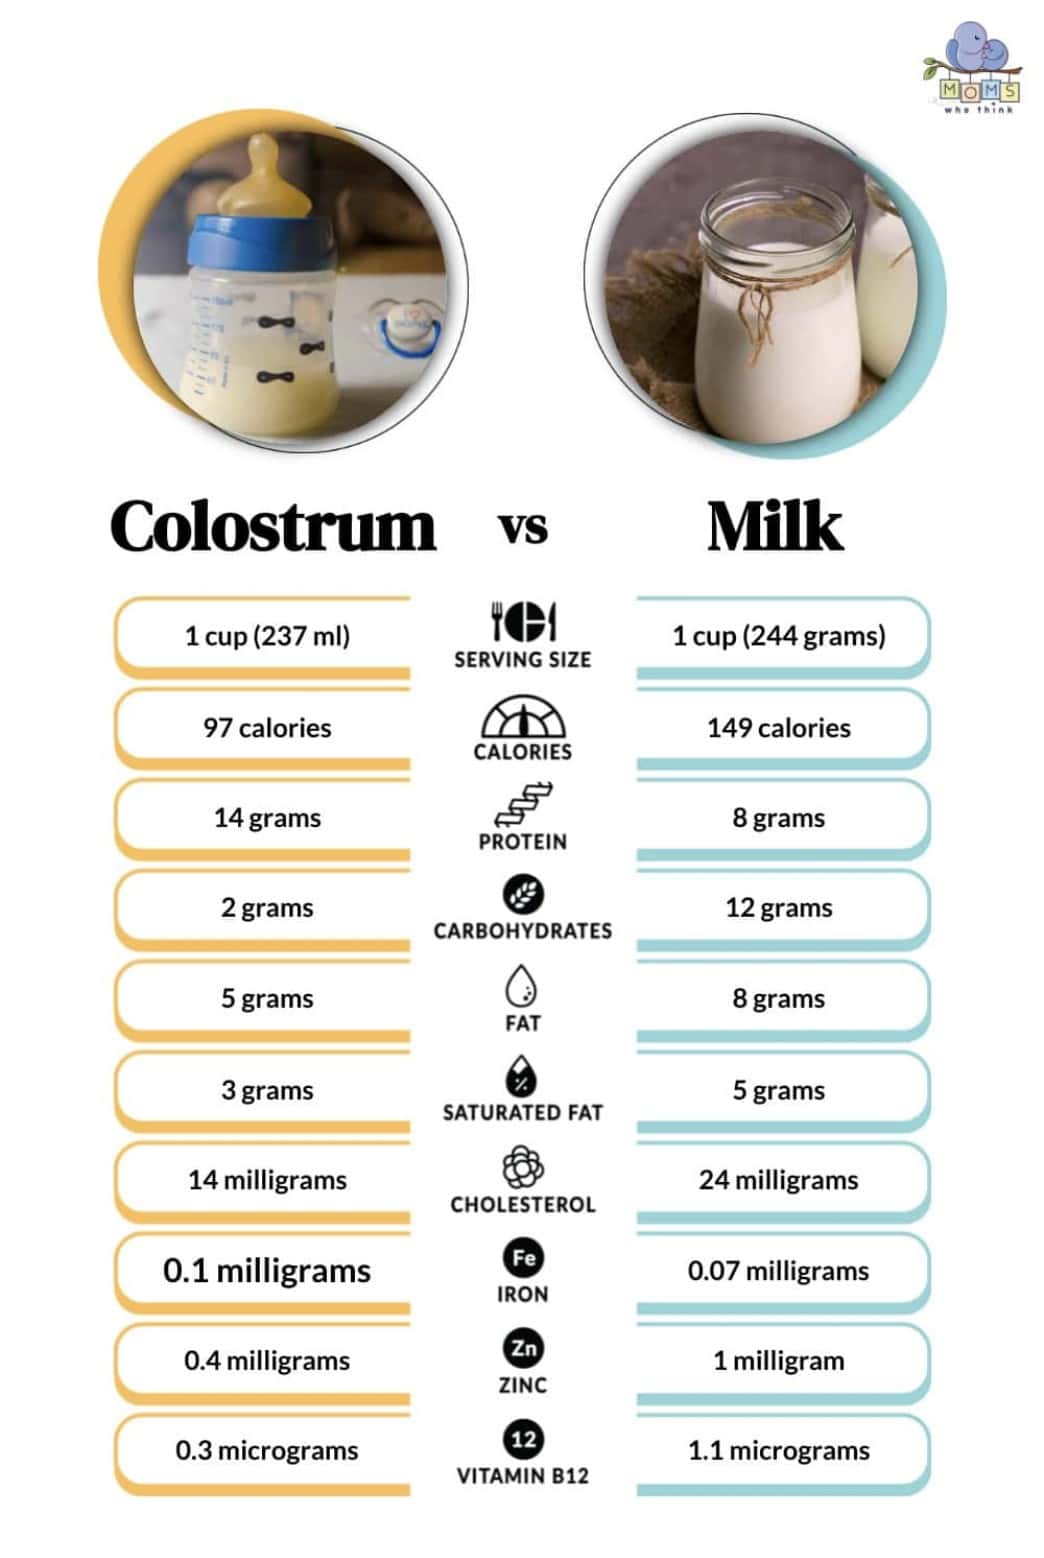 Colostrum vs. Milk